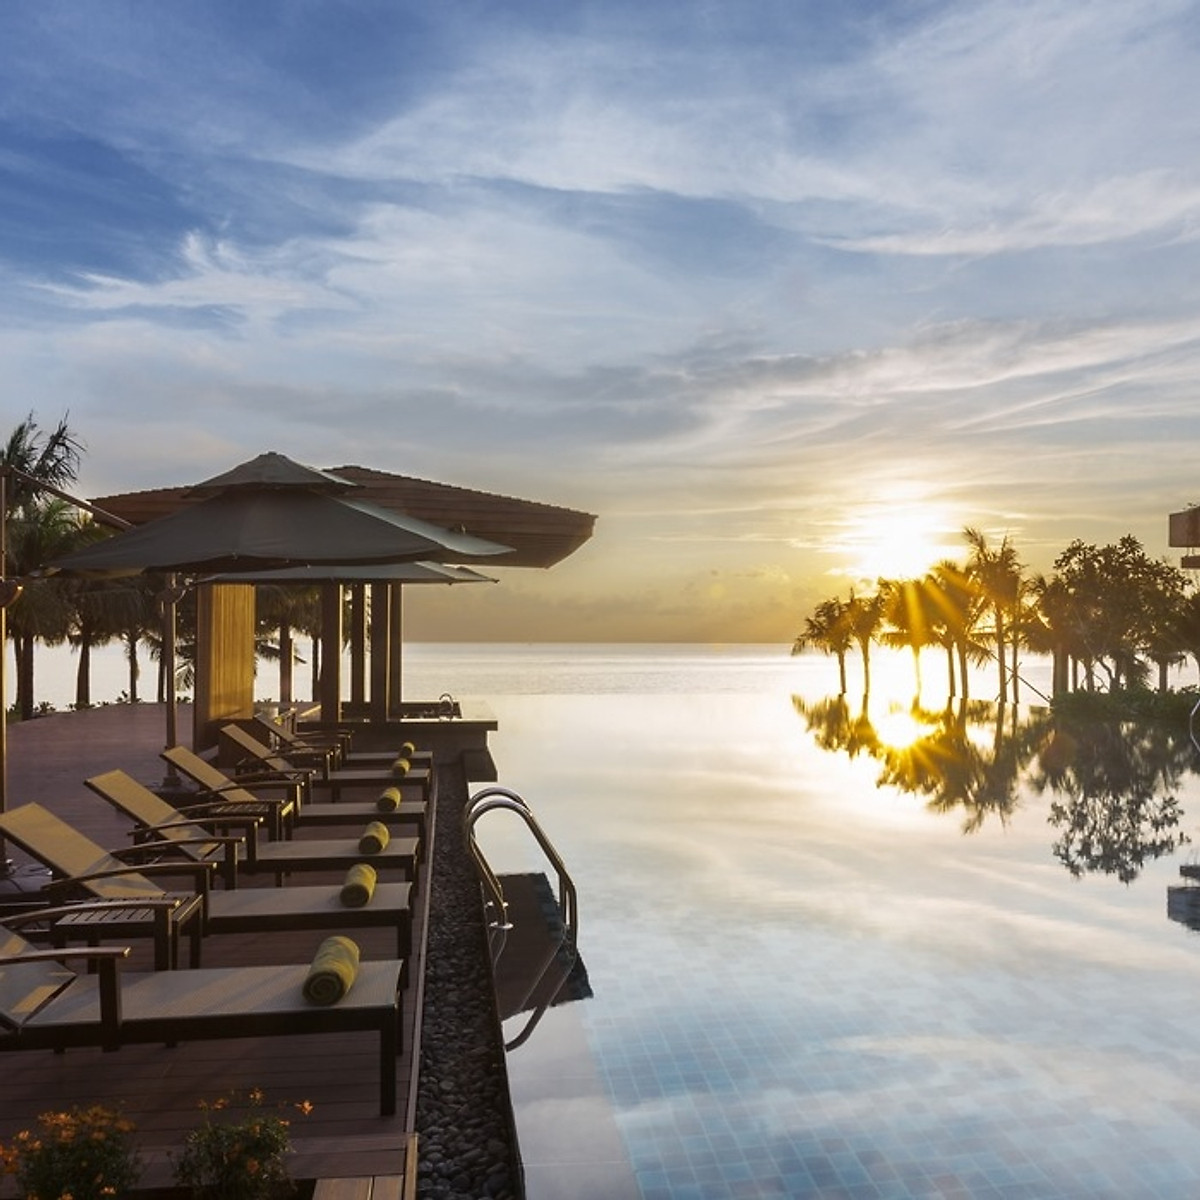 Dusit Princess Moonrise Resort 5* Phú Quốc - Buffet Sáng, Hồ Bơi Vô Cực, Bãi Biển Riêng, Xe Đón Tiễn Sân Bay, Khách Sạn Gần Trung Tâm Dương Đông